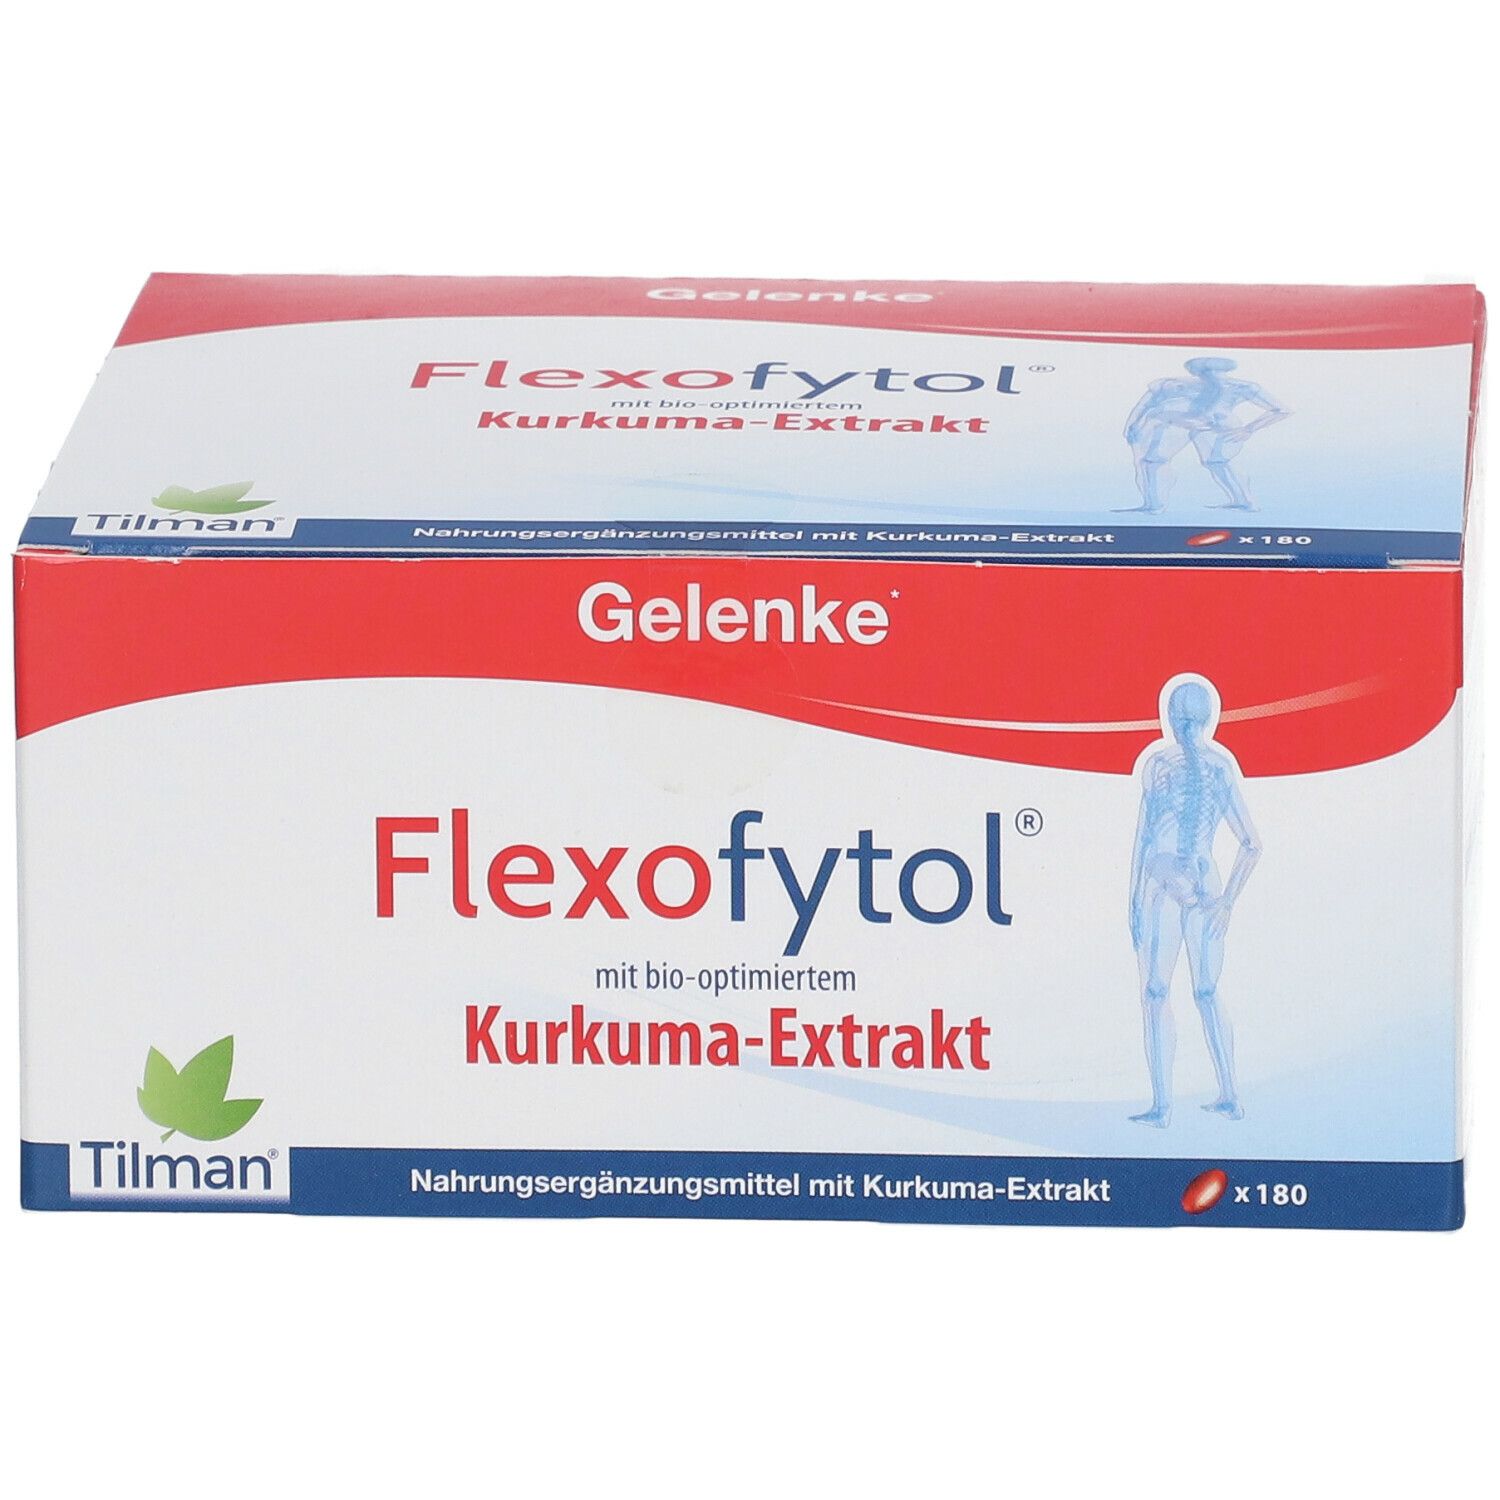 Flexofytol®